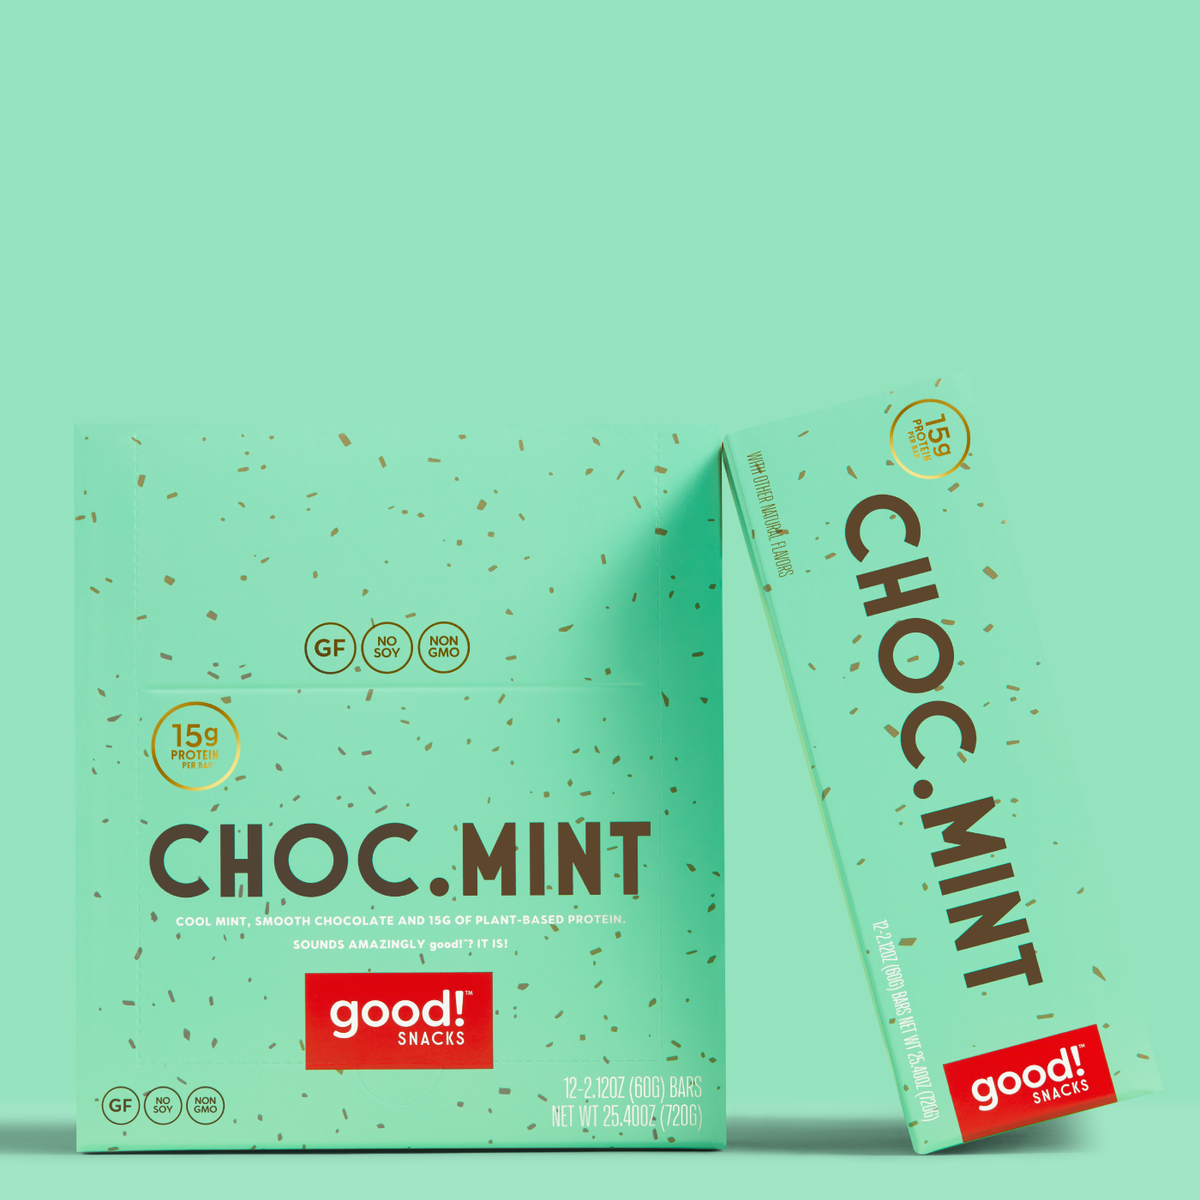 Choc. Mint